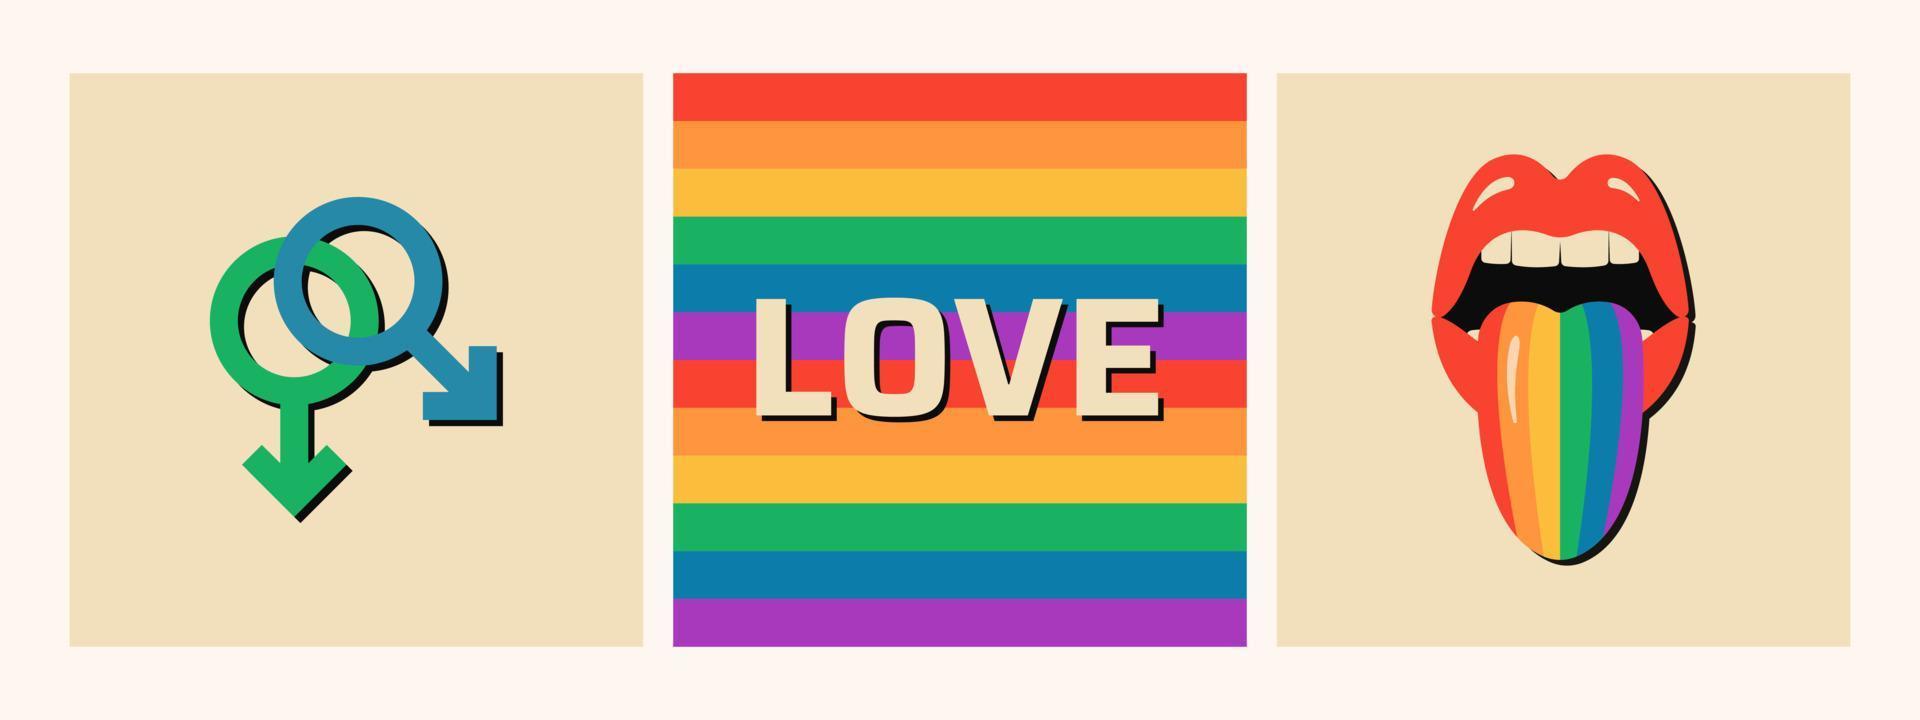 conjunto de banners lgbt minimalistas. símbolo de género de relación gay. vector